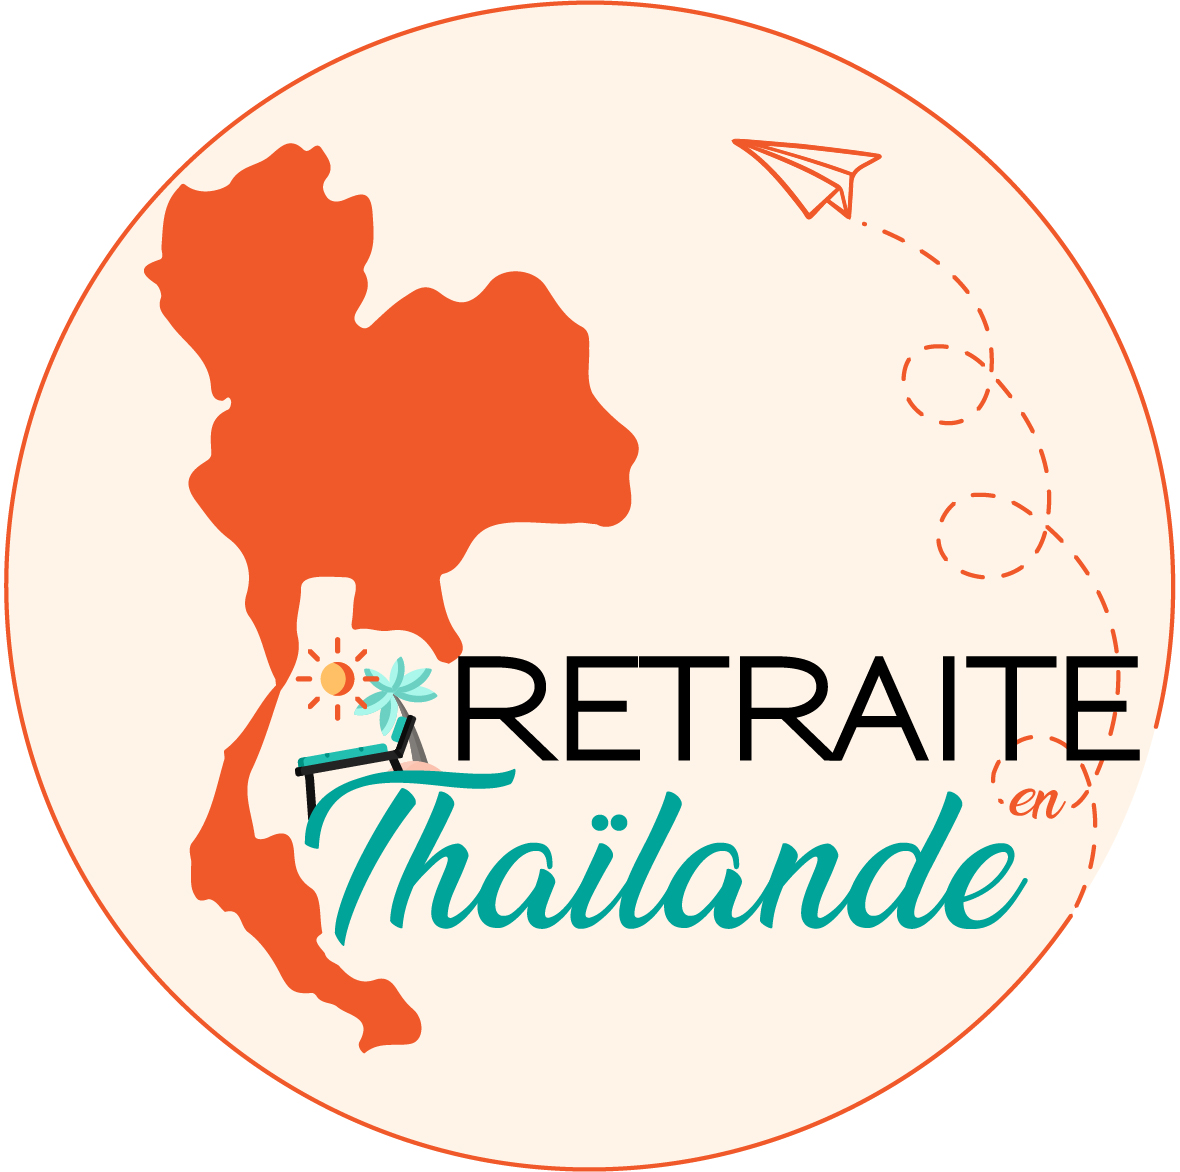 (c) Retraite-en-thailande.com